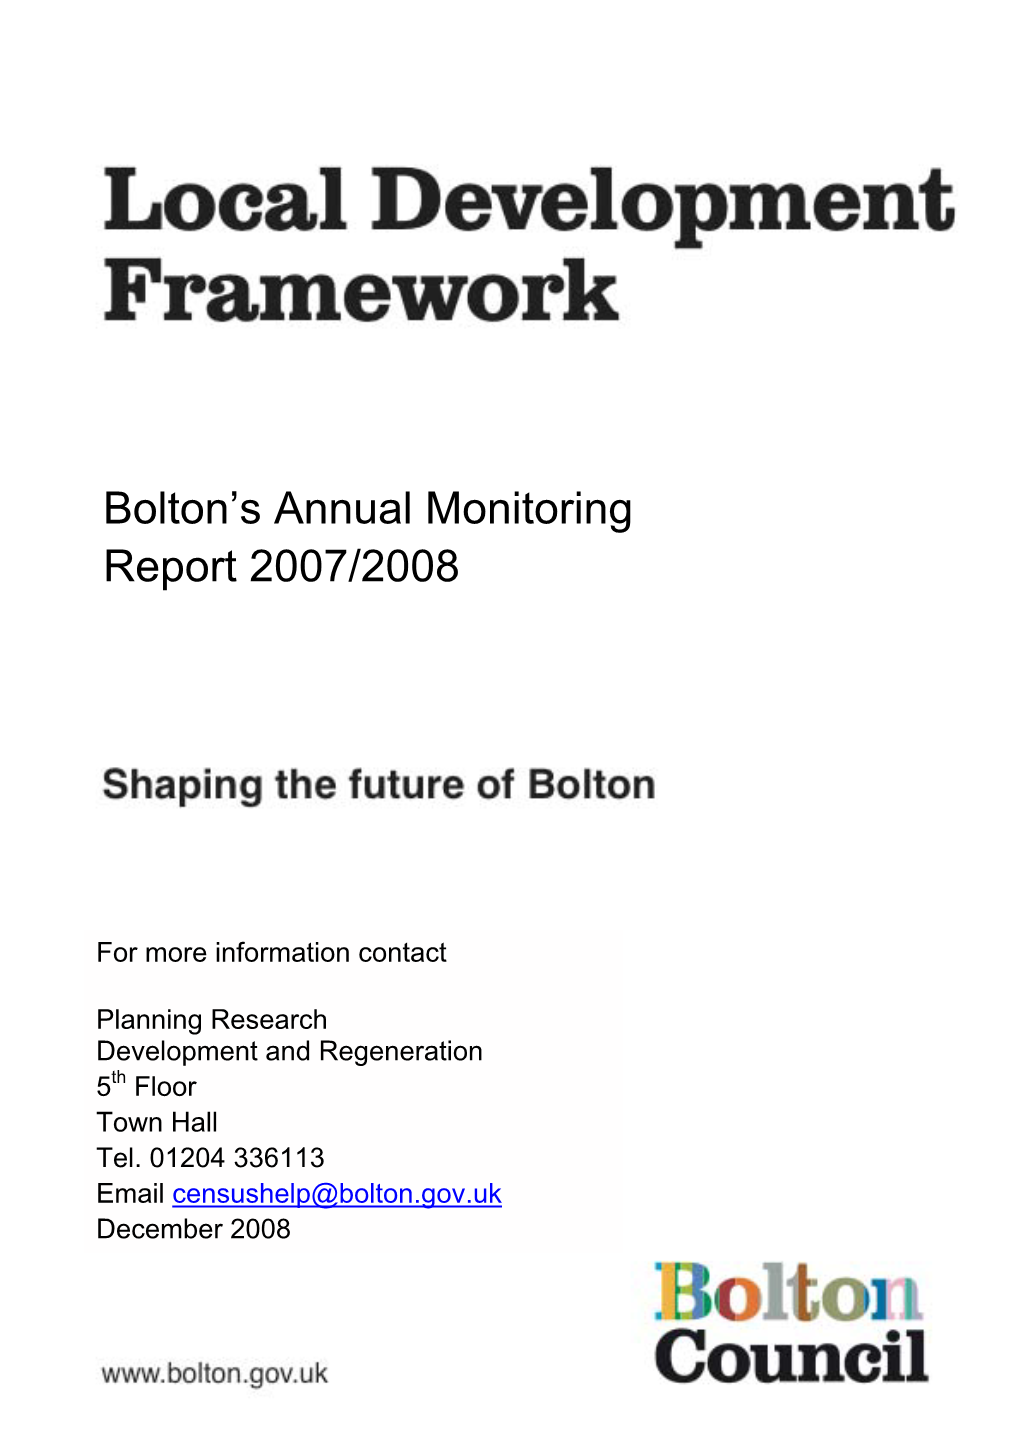 Bolton's Annual Monitoring Report 2007/2008